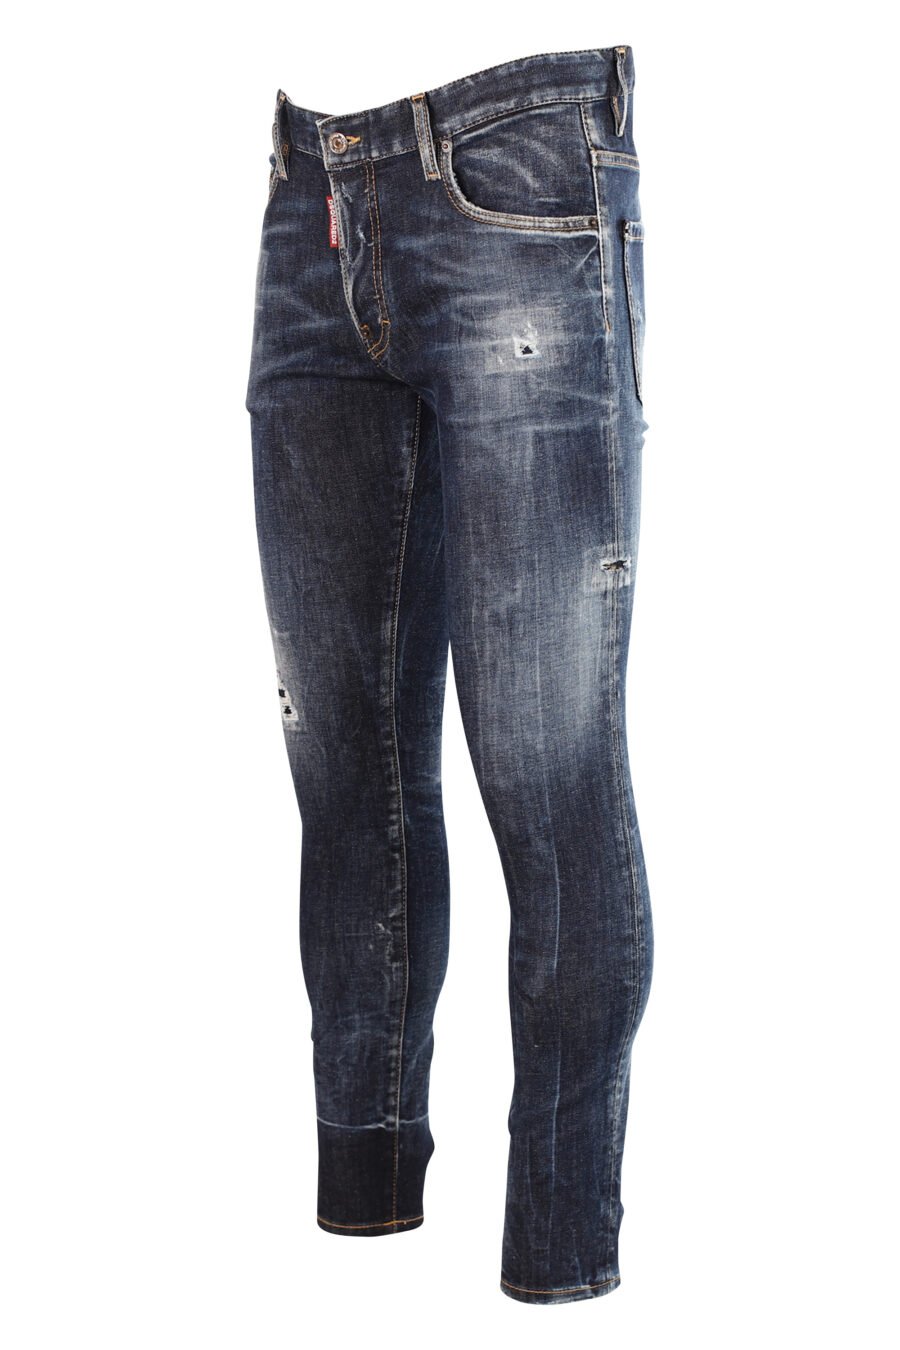 Jeans "super twinkey jean" bleu avec déchirures - 8052134966914 2